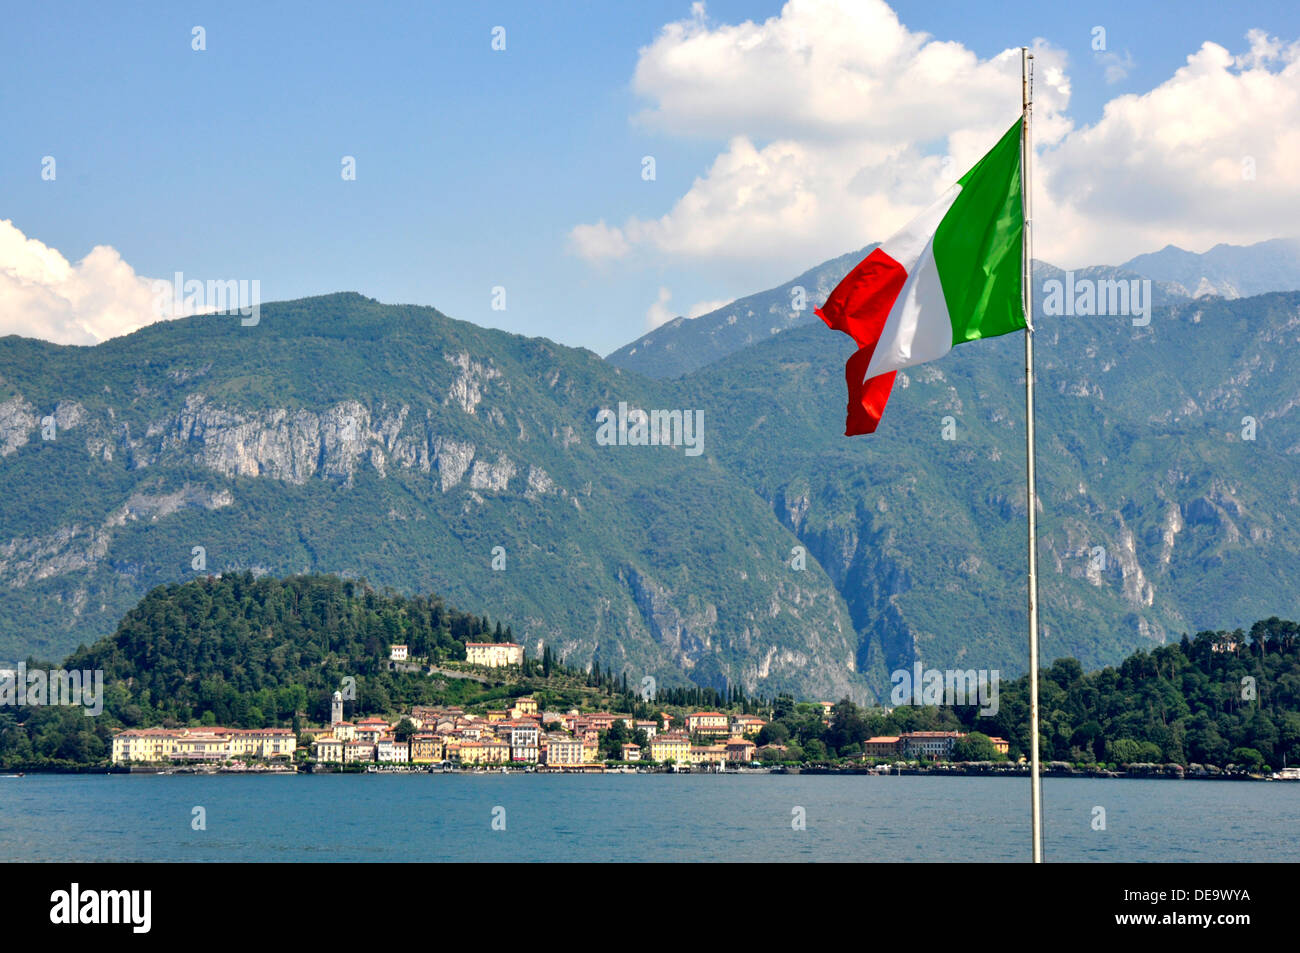 Italie - Lac de Côme - Italien drapeau national - ville de Bellagio sur le lac - à l'abri des pentes boisées et de montagnes - été Banque D'Images